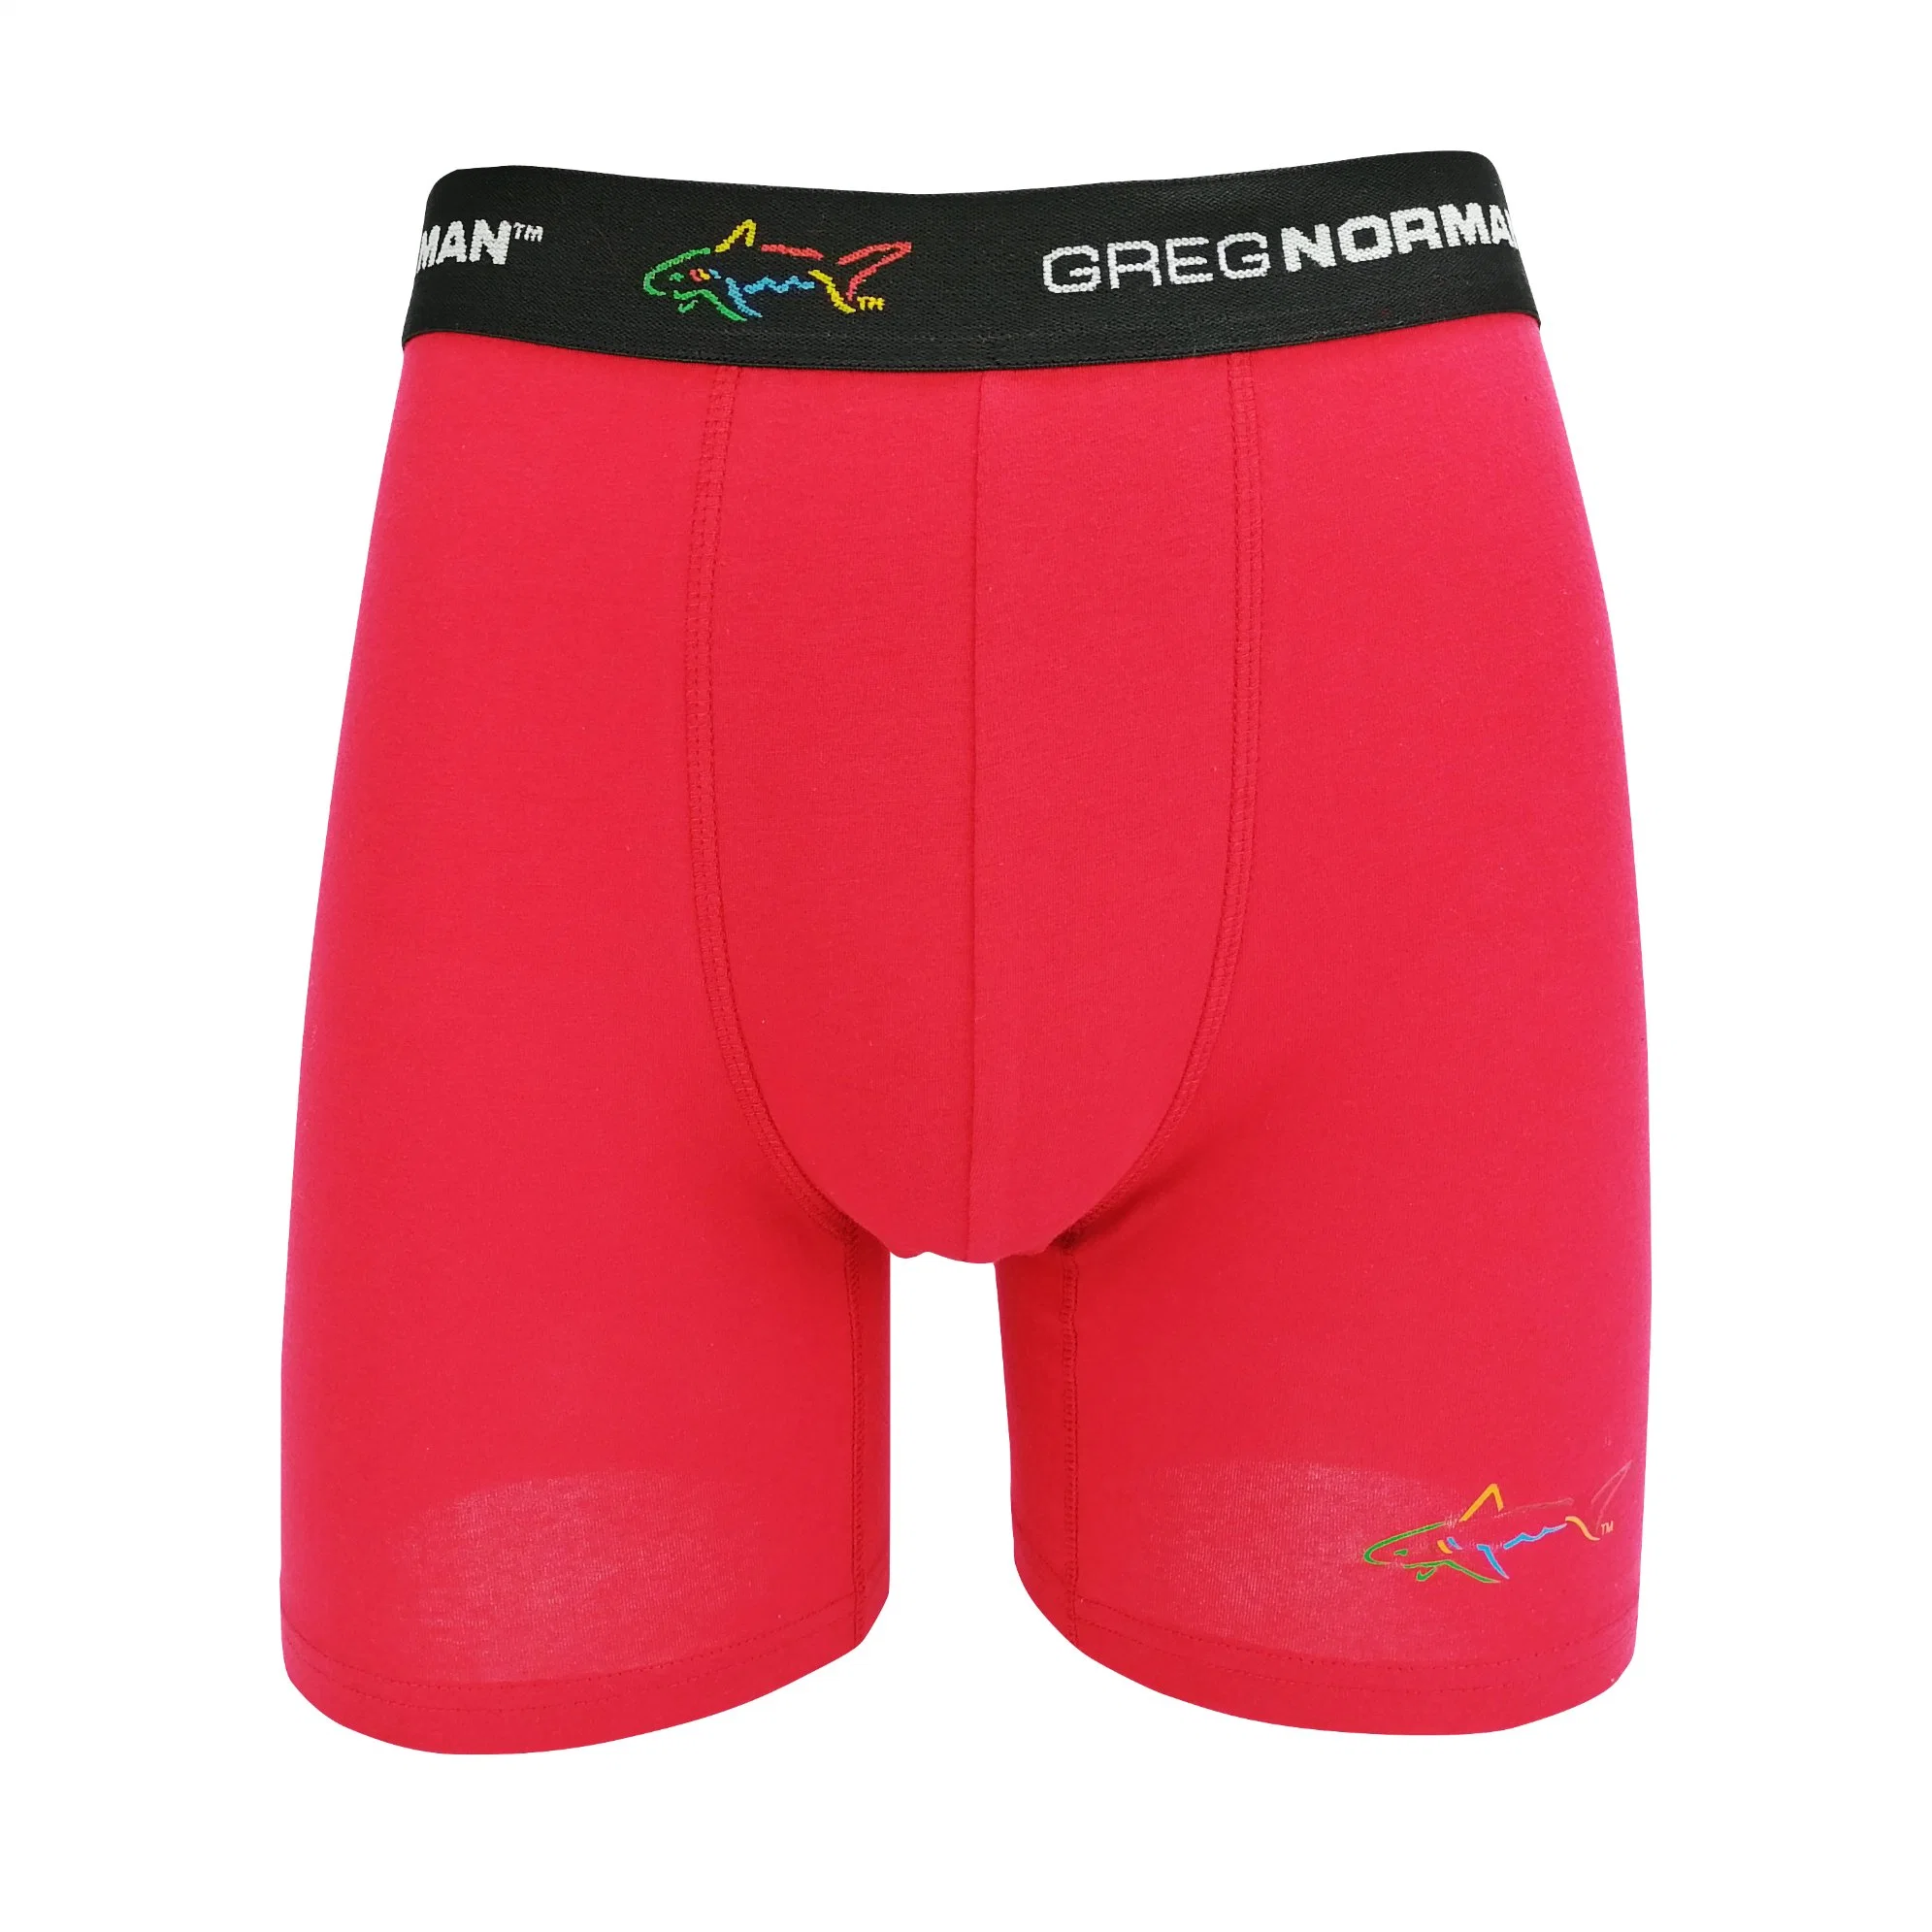 Vente chaude Personnaliser Rouge Couleur Marque Impression Coton Hommes Boxers